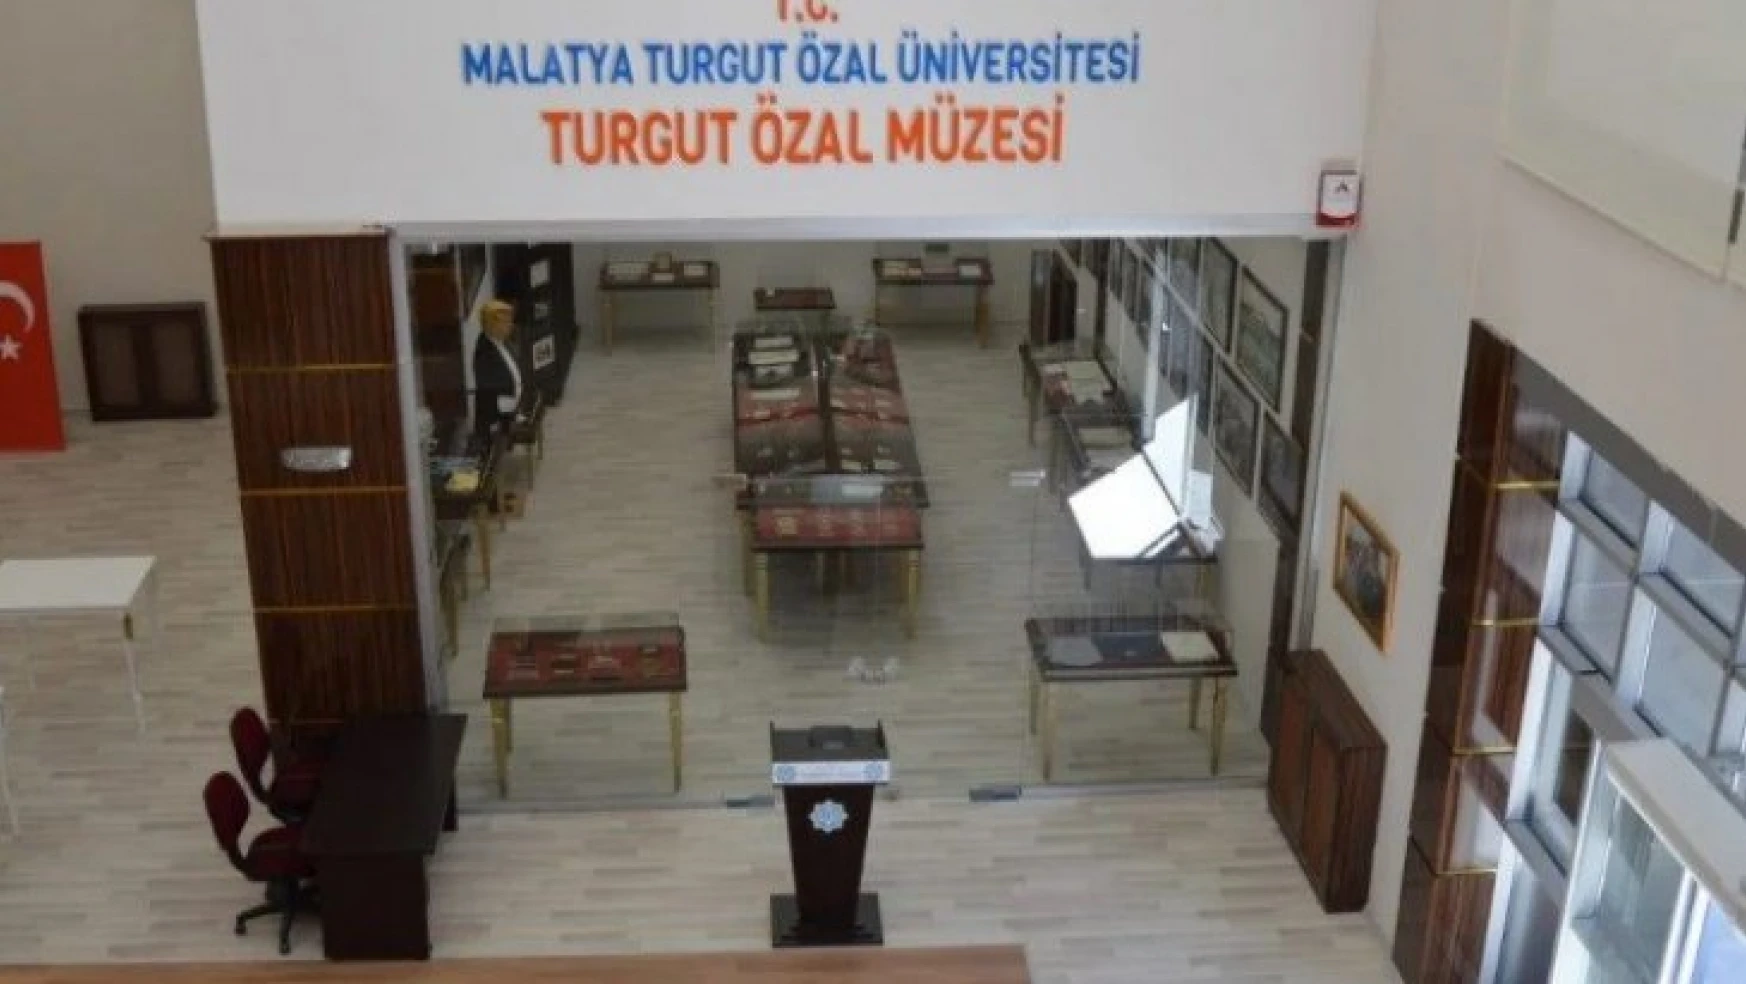 Özal'ın anısına kurulan müze sanal ortamda